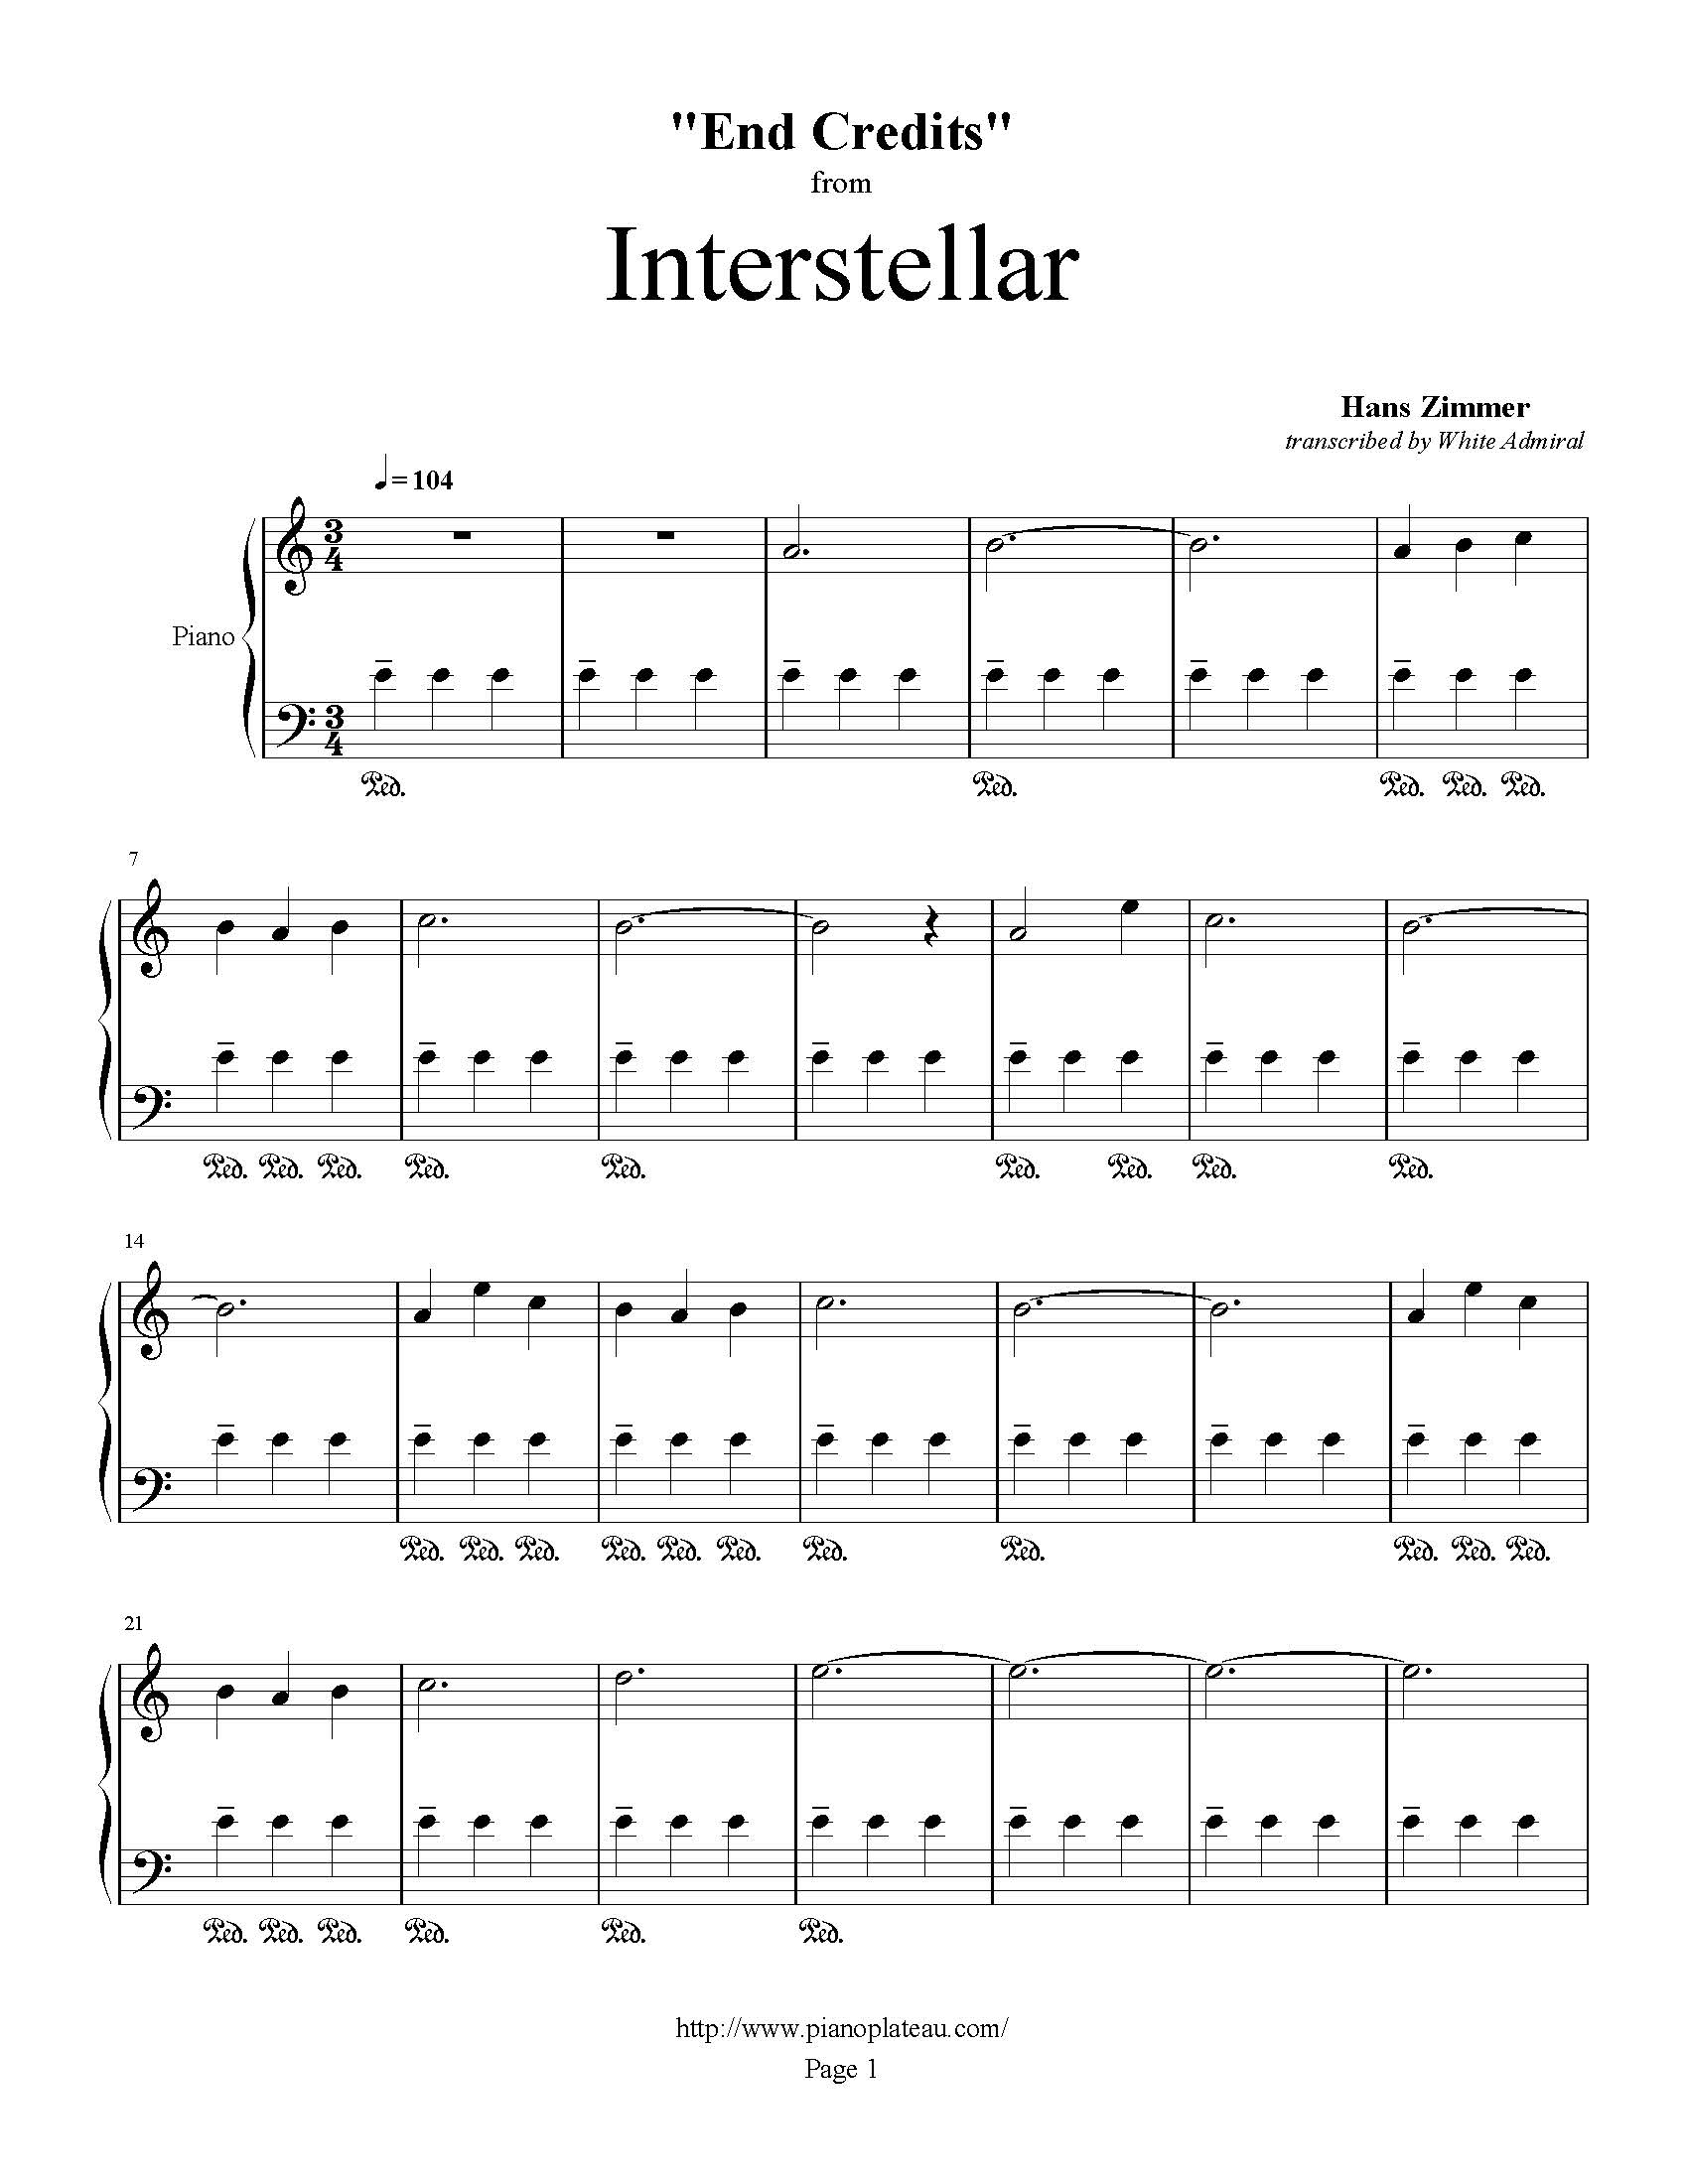 Interstellar (End Credits) - Hans Zimmer | True Piano Transcriptions